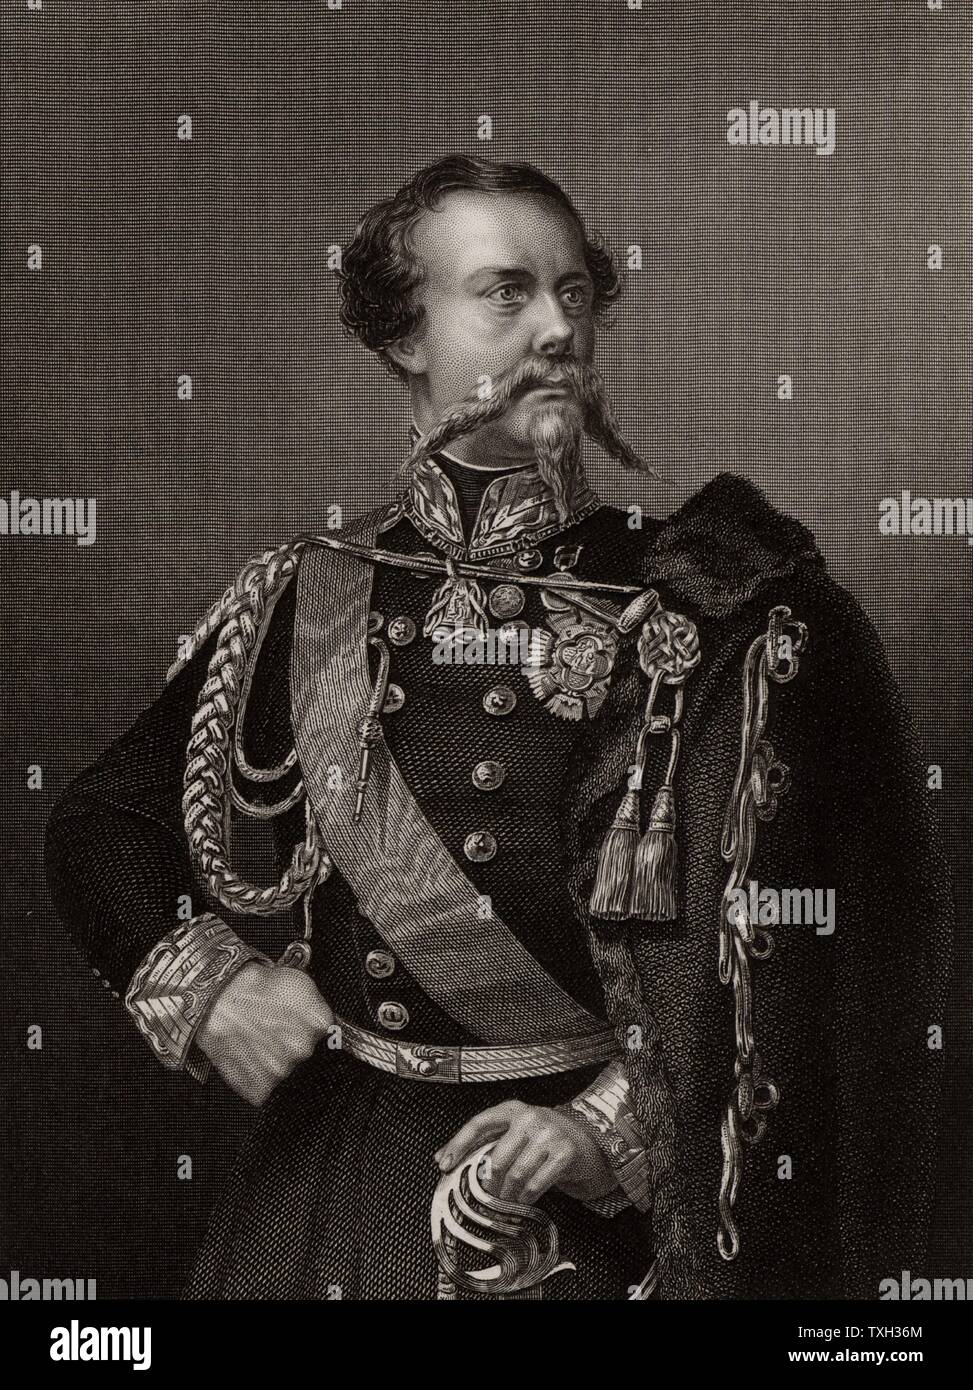 Victor Emmanuel II (1820-78), der König von Piemont, Savoyen und Sardinien von 1849. Erste König von Italien aus dem Jahre 1861. Während des Krimkrieges (Russisch-türkischen) Krieg (1853-1856) Italien verbündet war mit Großbritannien und Frankreich gegen Russland. Gravur. Stockfoto